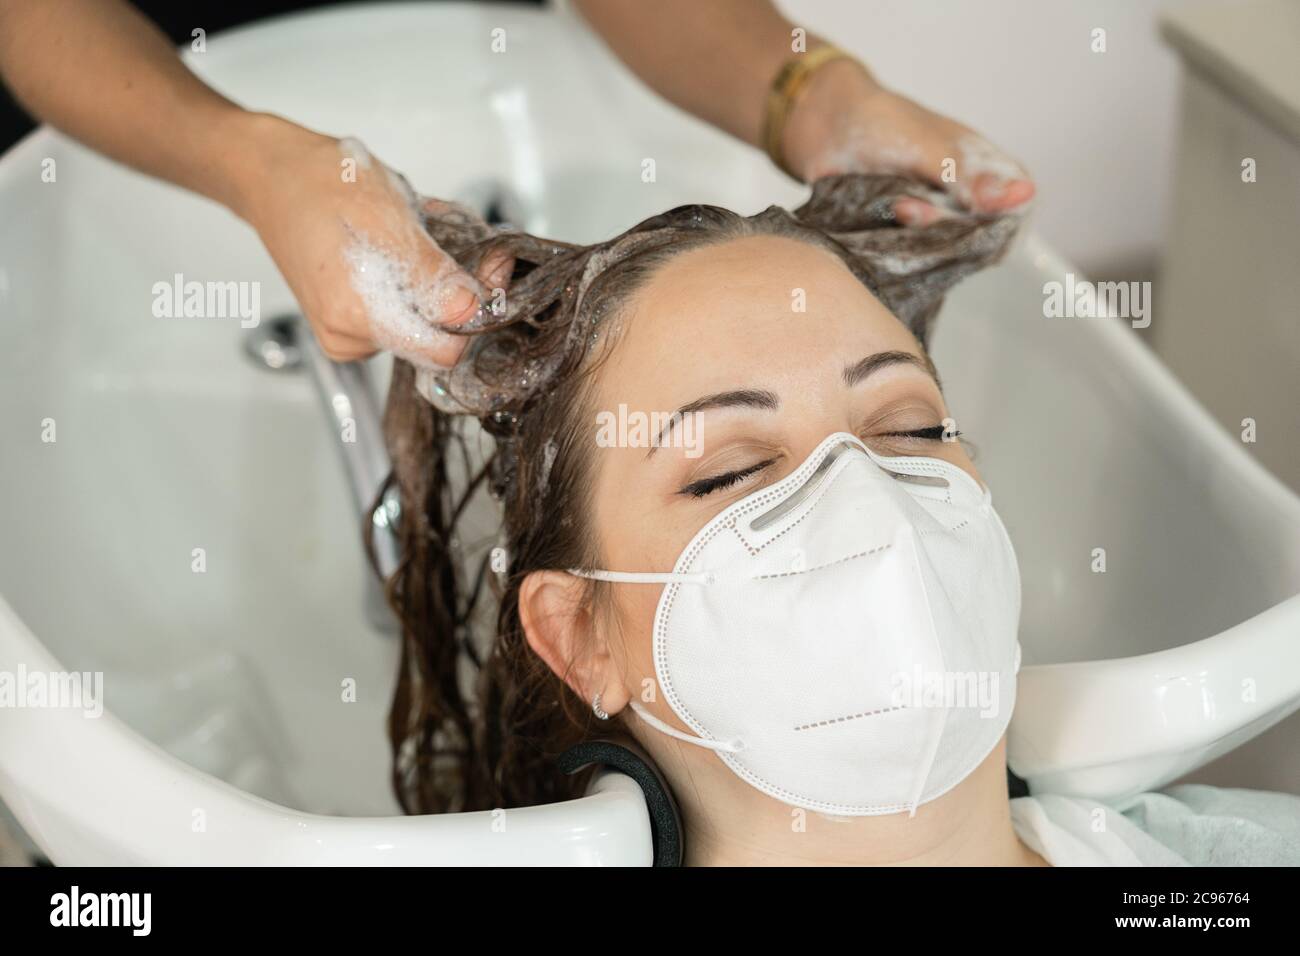 Giovane ragazza con lunghi capelli marroni, che si inzuppano lavando la testa nel parrucchiere. Distanza sociale. Uso della maschera facciale. Primo piano Foto Stock